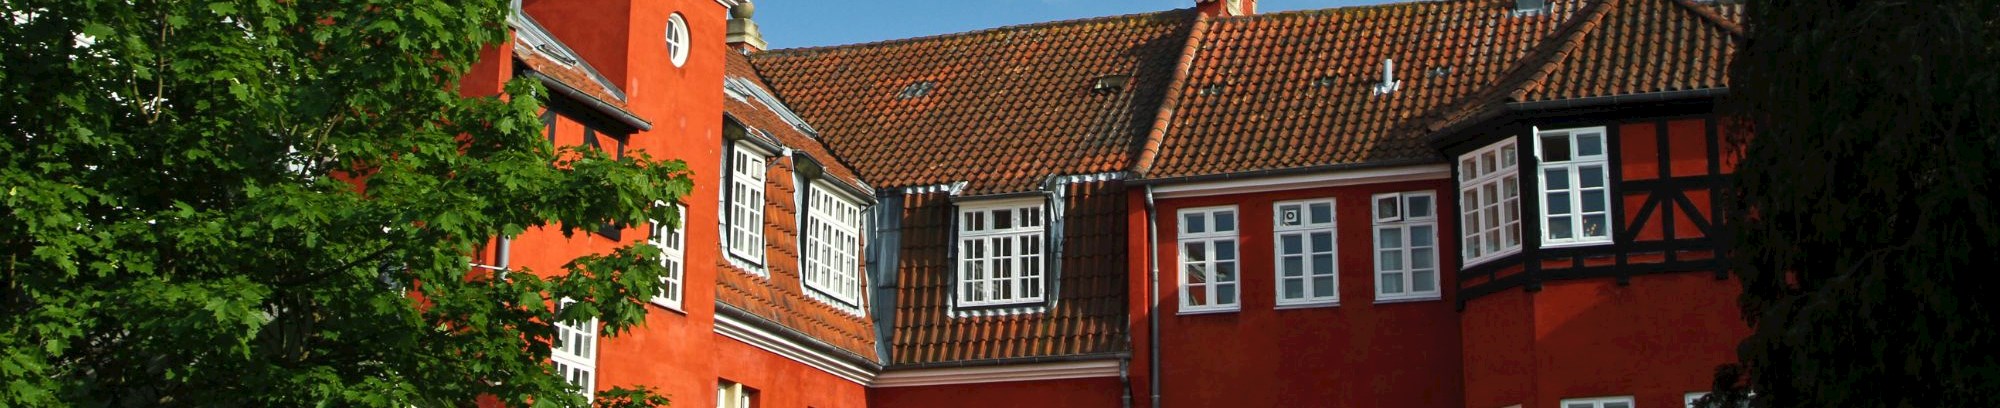 Hør om Hørsholms borgmestres liv og virke. Og blive klogere på, hvorfor kommunen ser ud, som den gør i dag. 